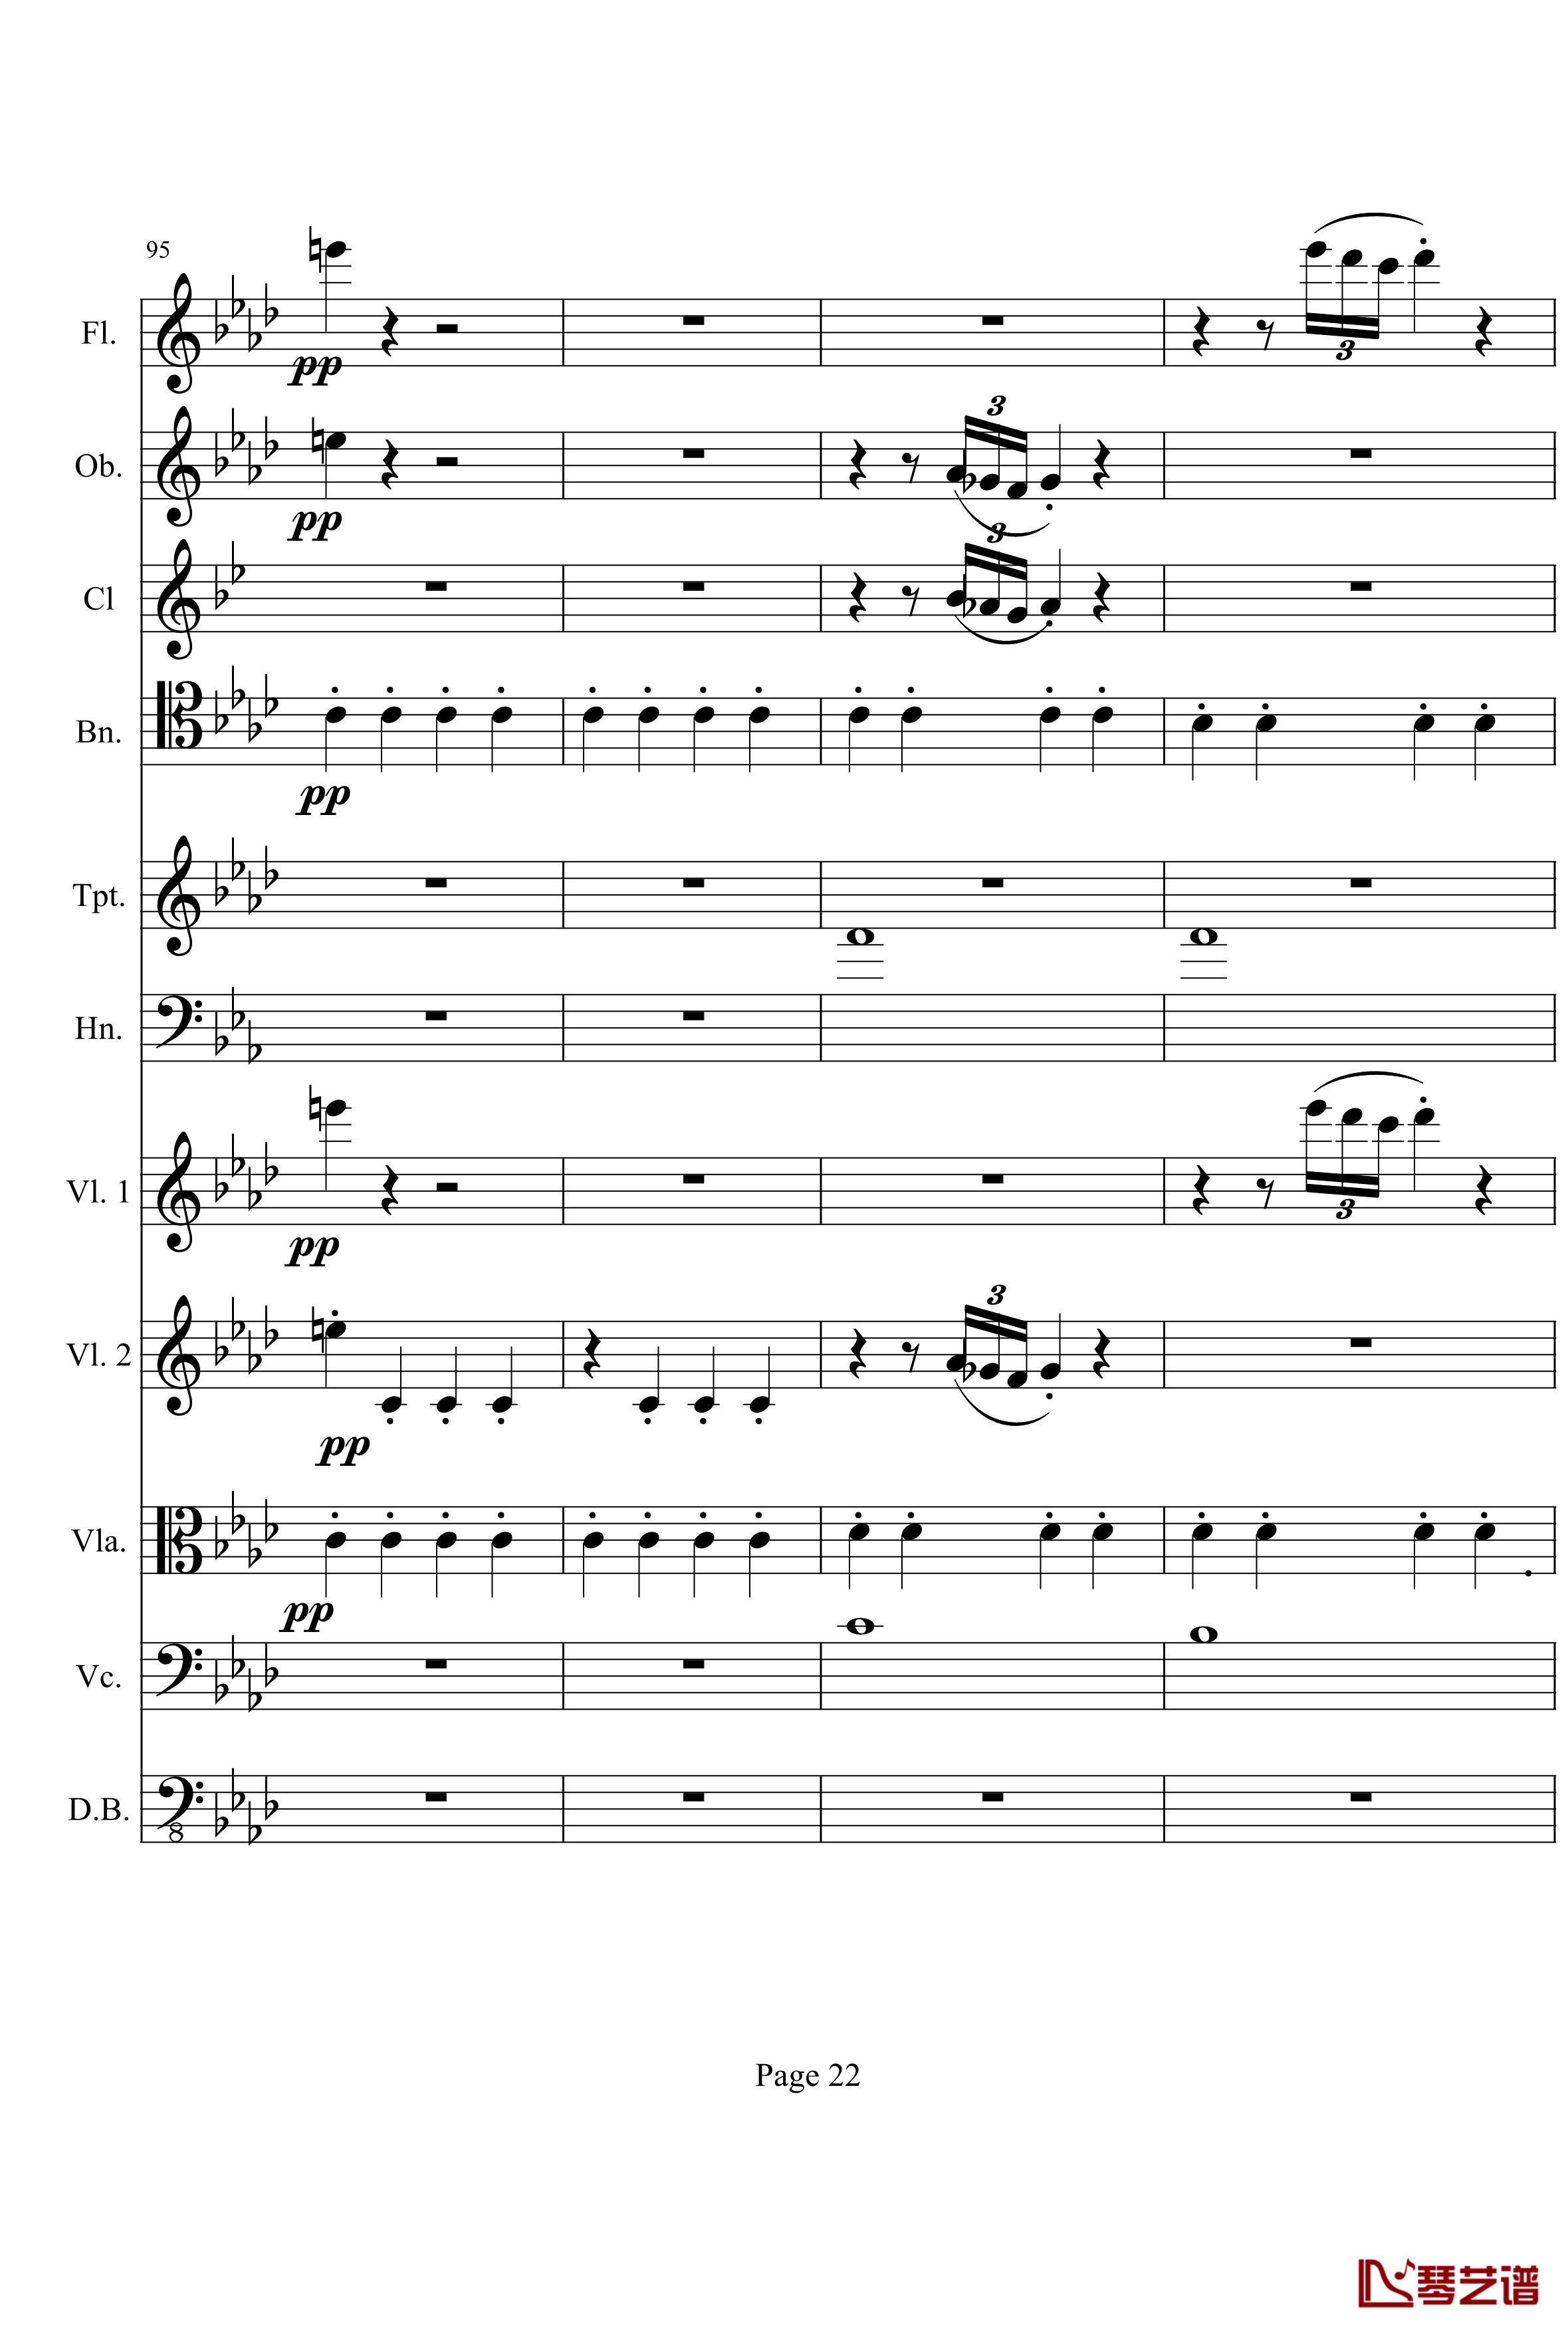 奏鸣曲之交响钢琴谱-第1首-Ⅰ-贝多芬-beethoven22